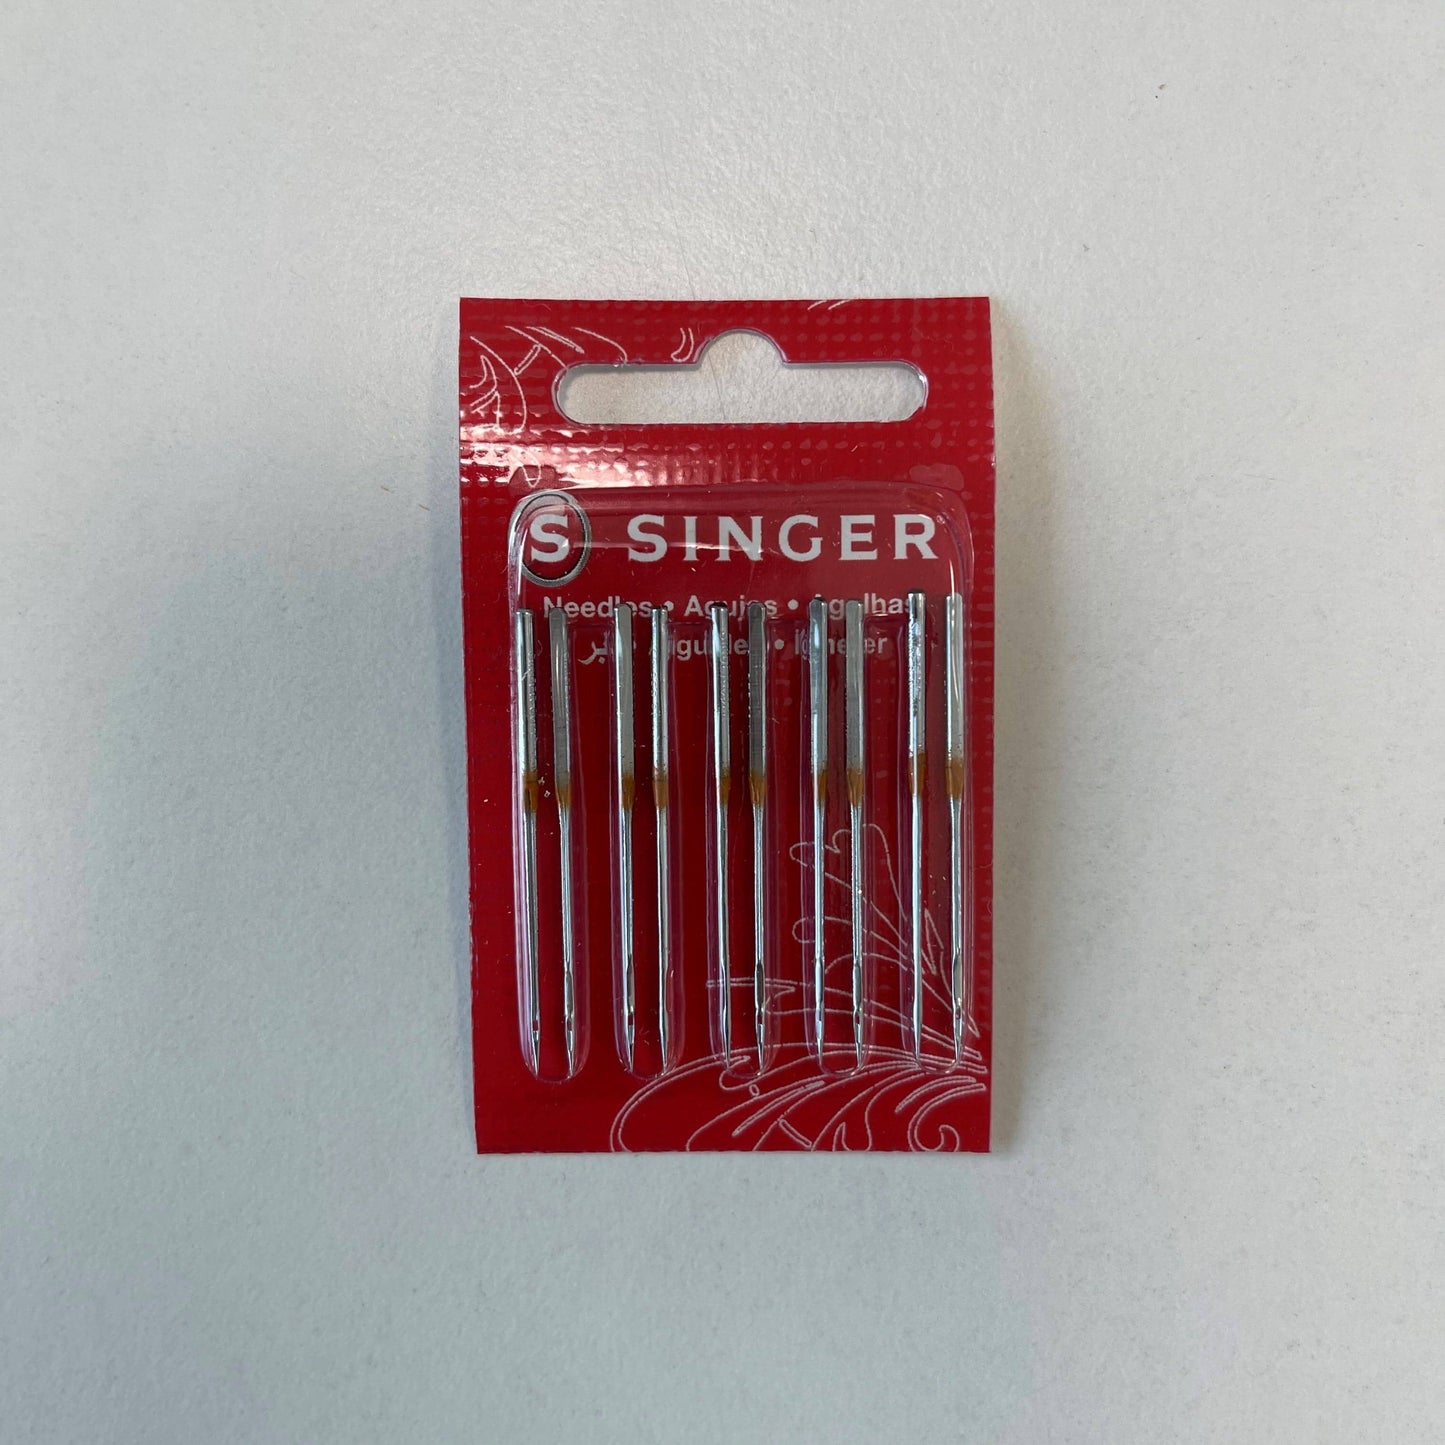 Singer Ball Point Overlocker Needles (2054) Size 80 - Pack of 10